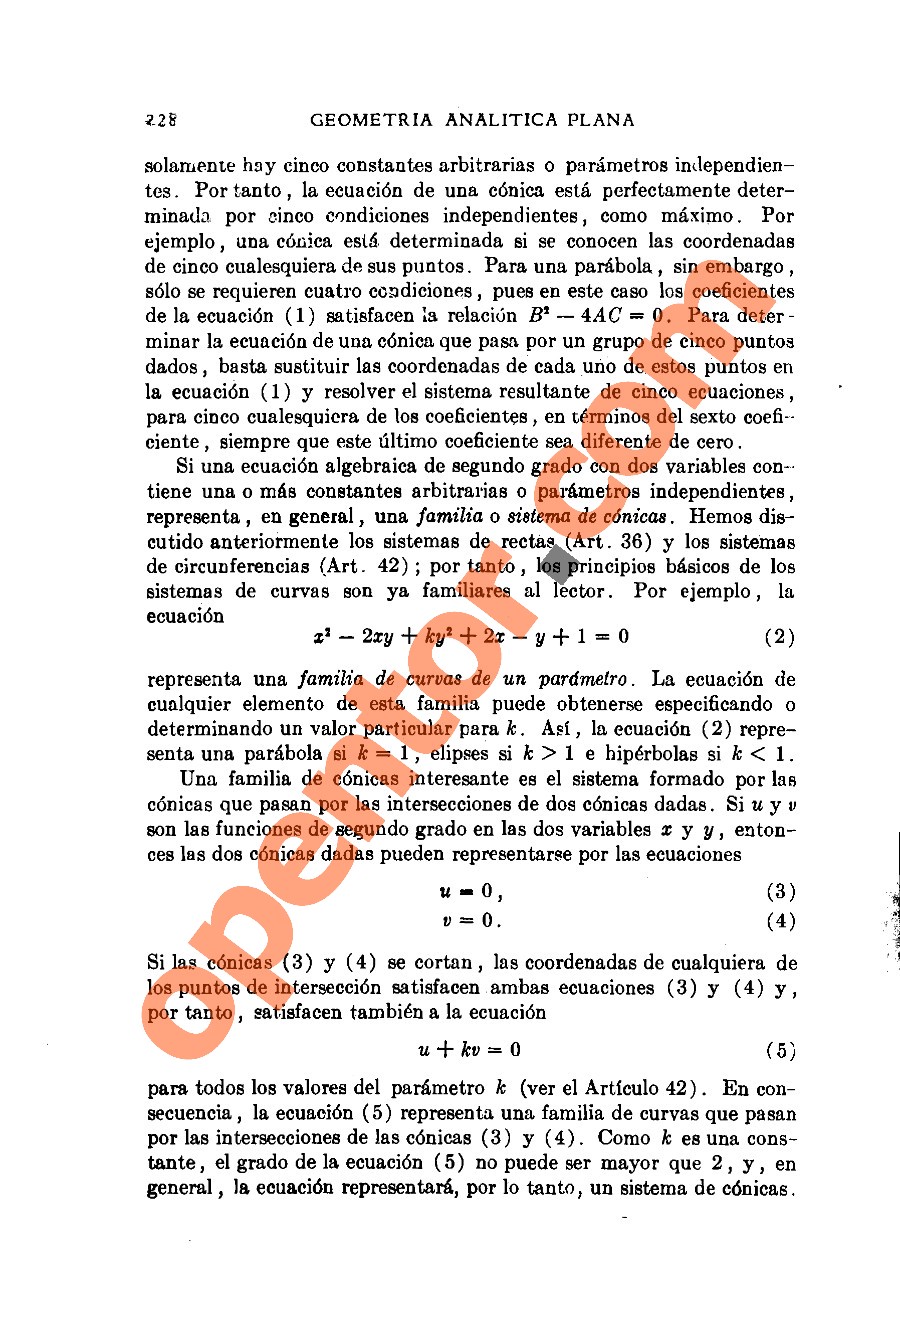 Geometría Analítica de Lehmann - Página 228